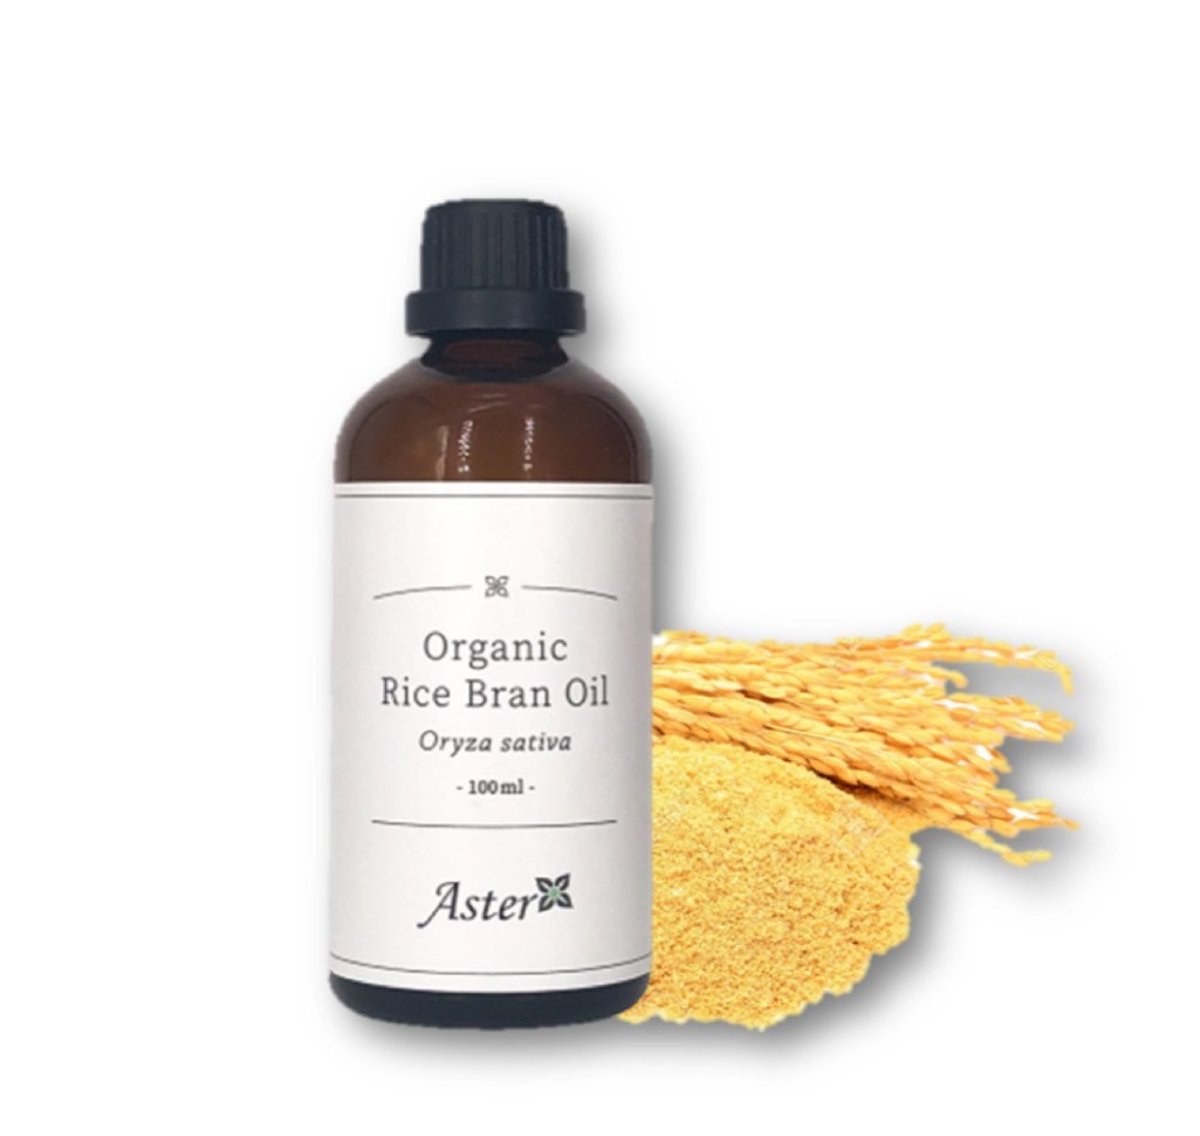 Organic Rice Bran Oil (Oryza sativa) - 100ml